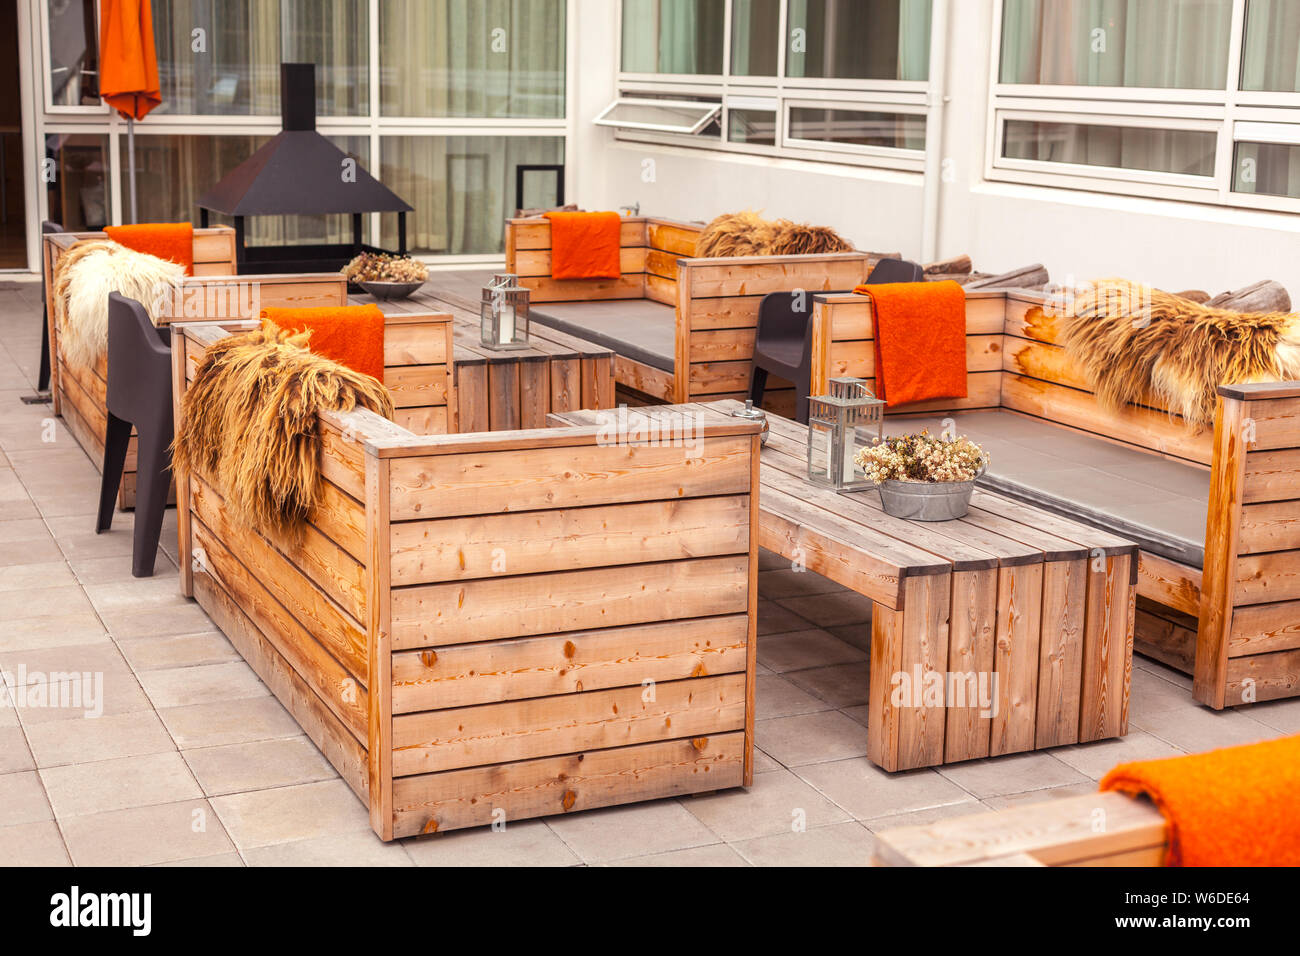 Restaurant im Freien, Terrasse mit Möbeln im skandinavischen Stil. Umweltfreundliche authentisches Design. Stockfoto